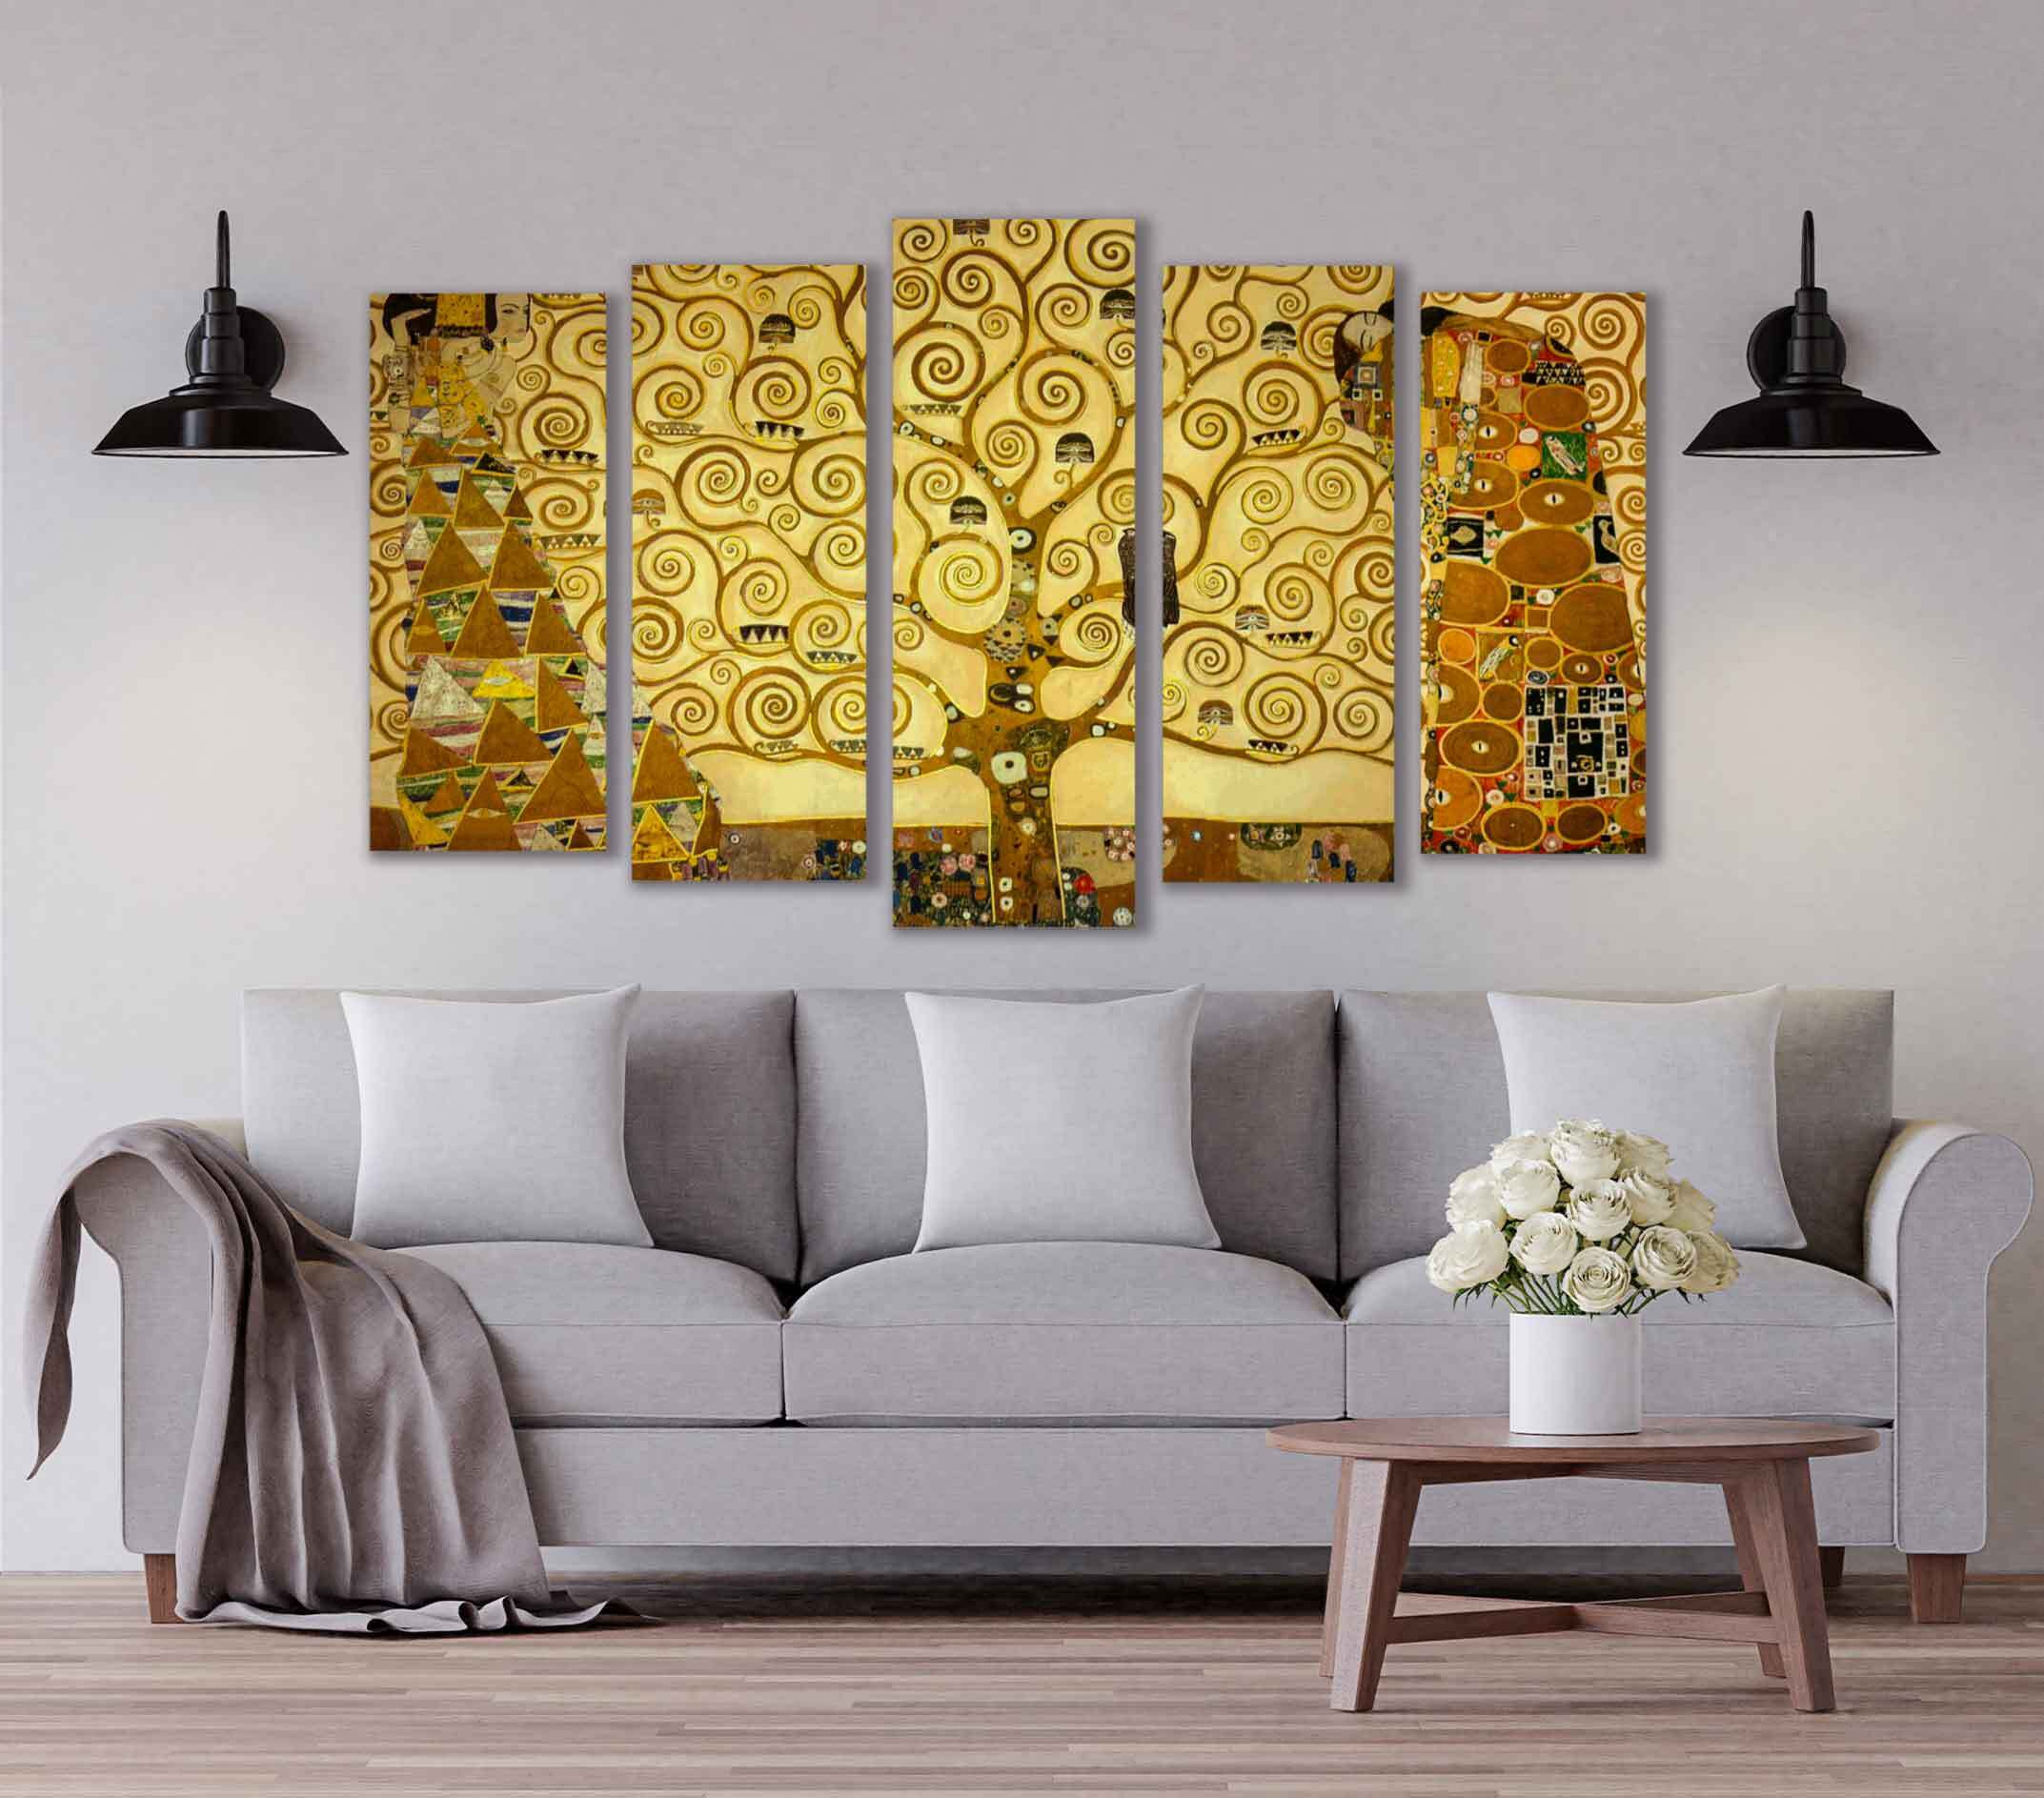 El árbol de la vida cinco piezas - cuadros de Gustav Klimt